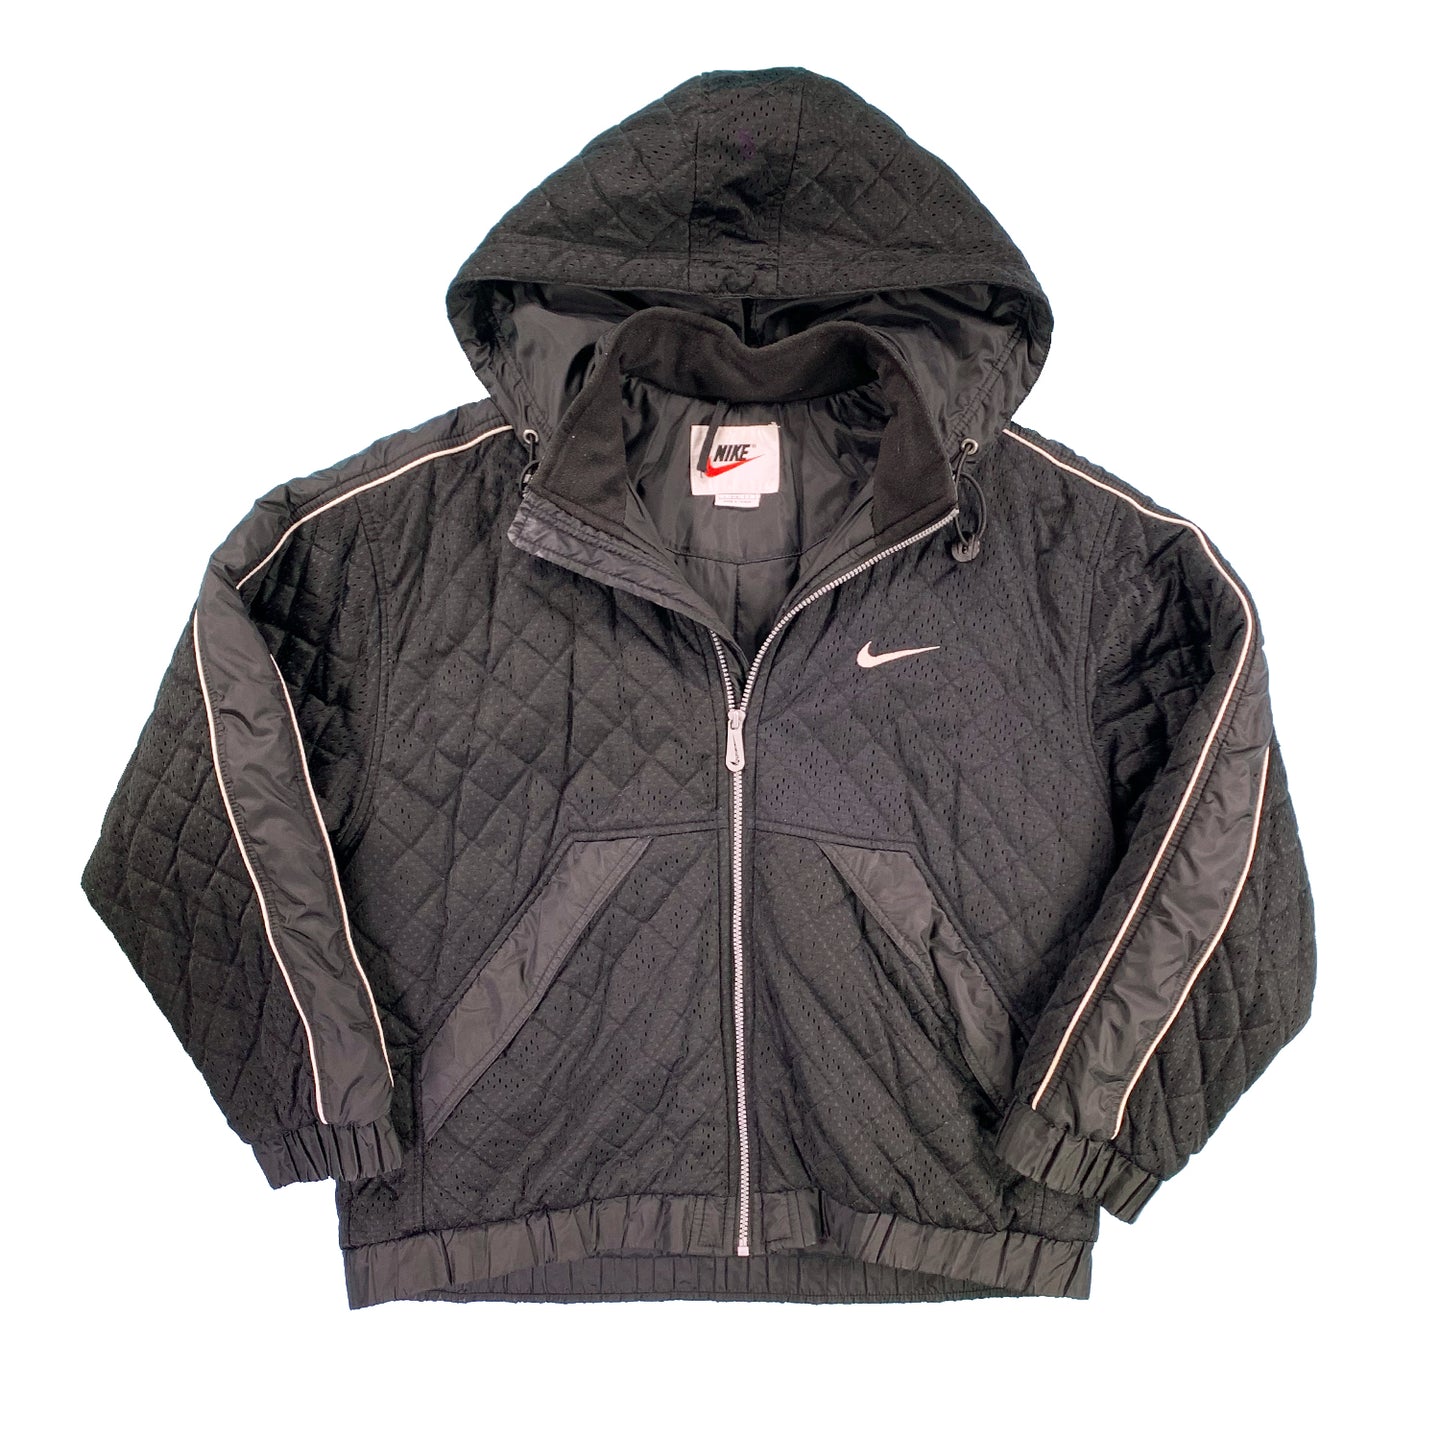 '90s Nike swoosh waffle jacket M/L